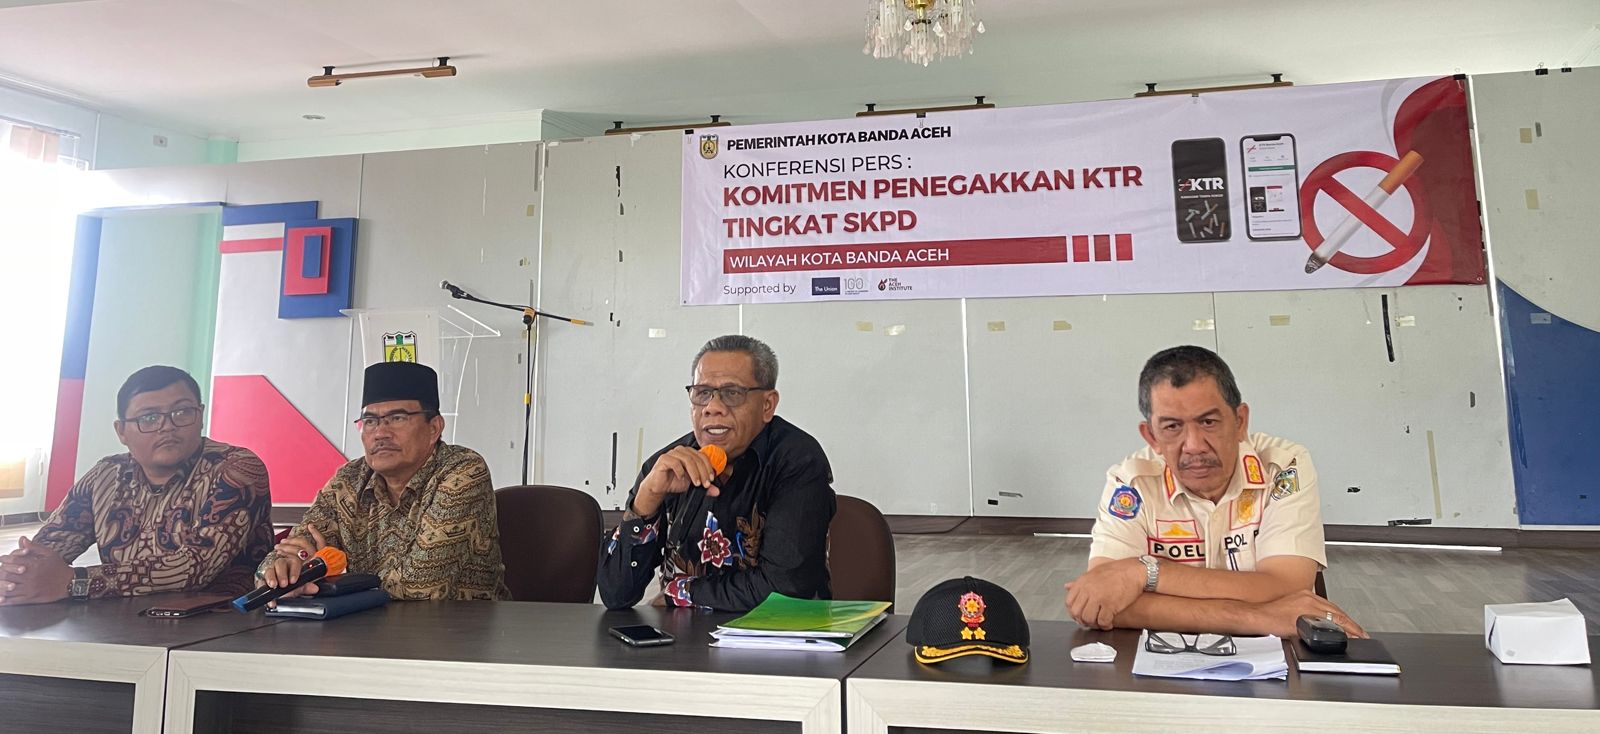 Kadinkes Kota Banda Aceh Minta Semua OPD Maksimalkan Penerapan Qanun KTR